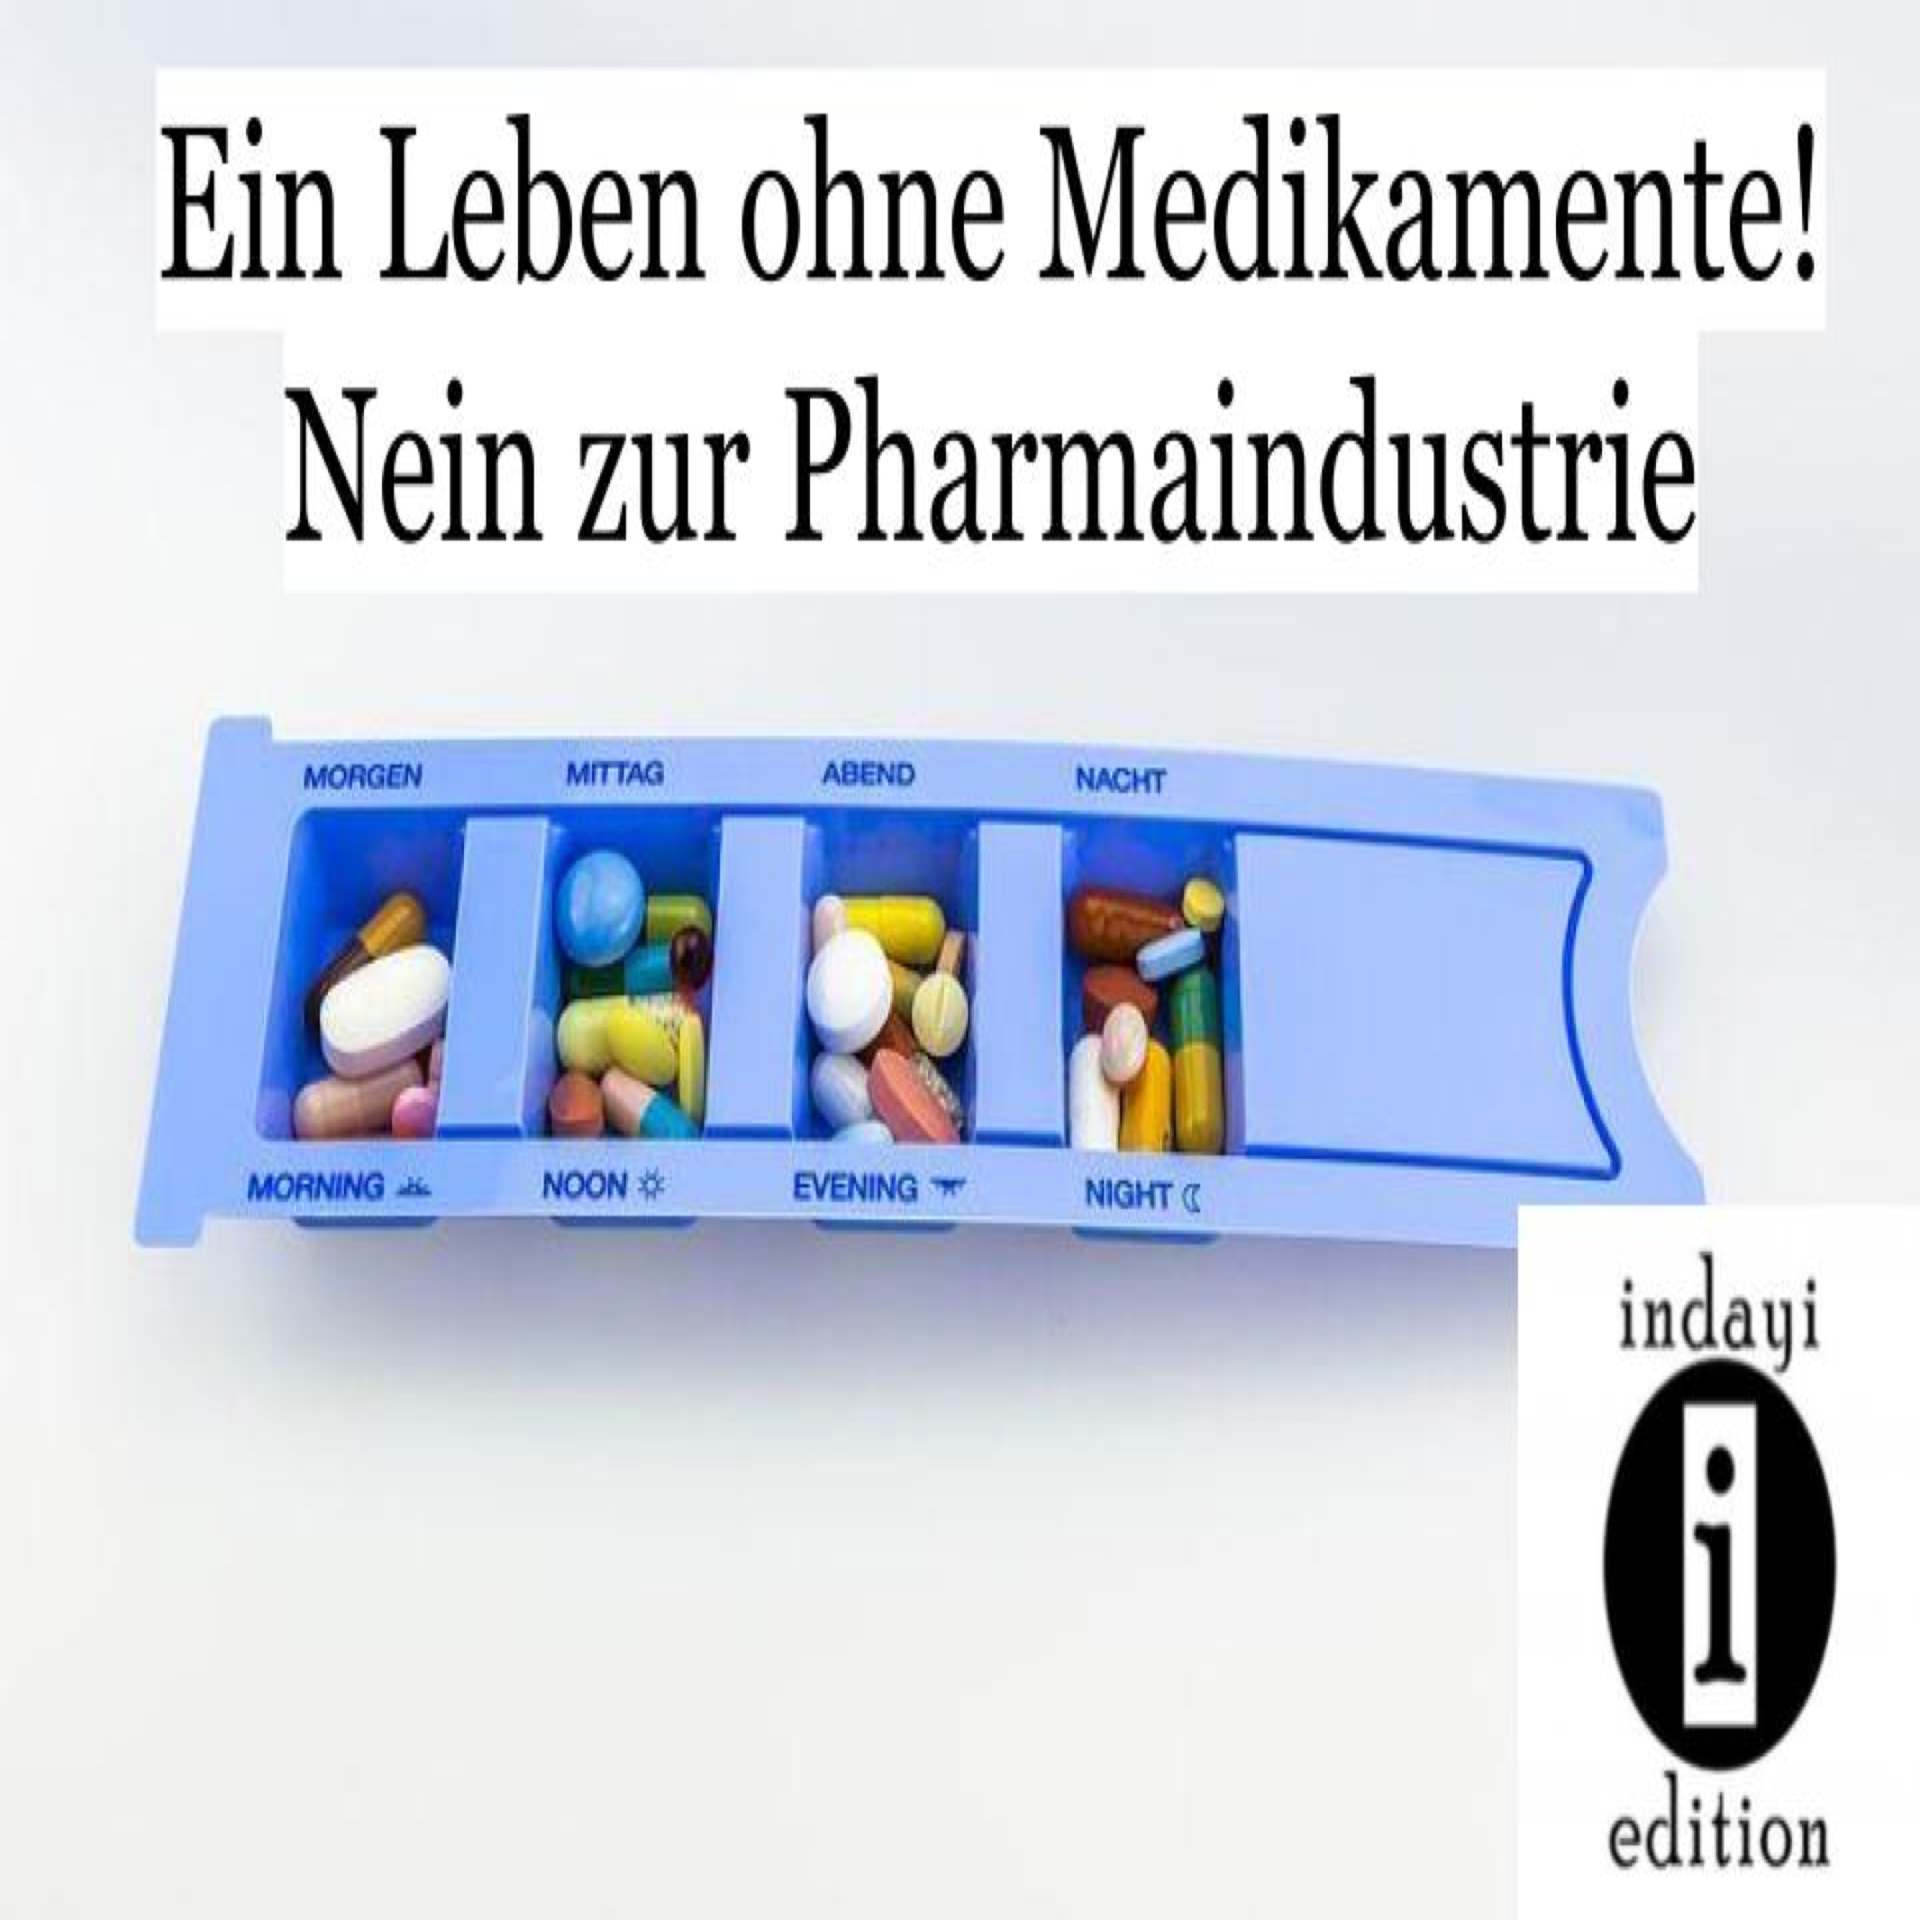 You are currently viewing Ein Leben ohne Medikamente! Nein zur Pharmaindustrie